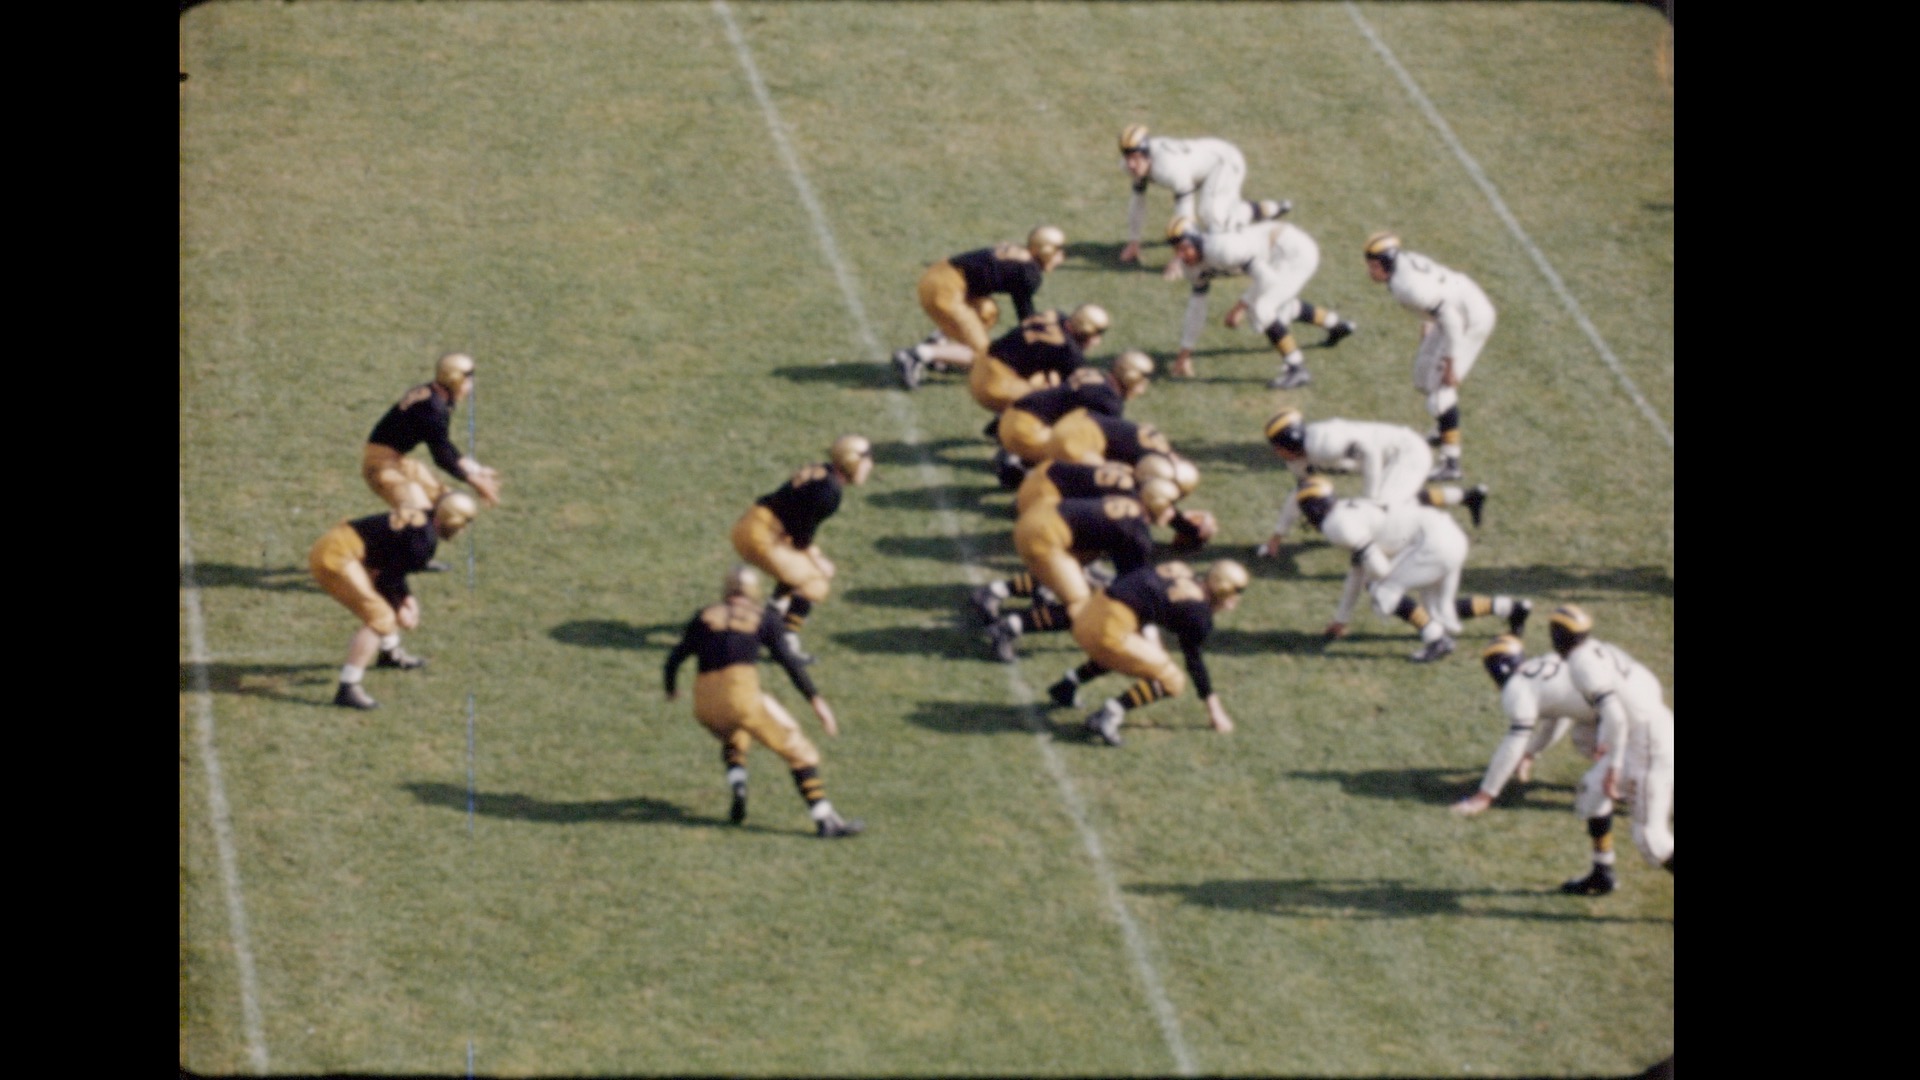 MSC Football vs. Great Lakes Navy, 1942